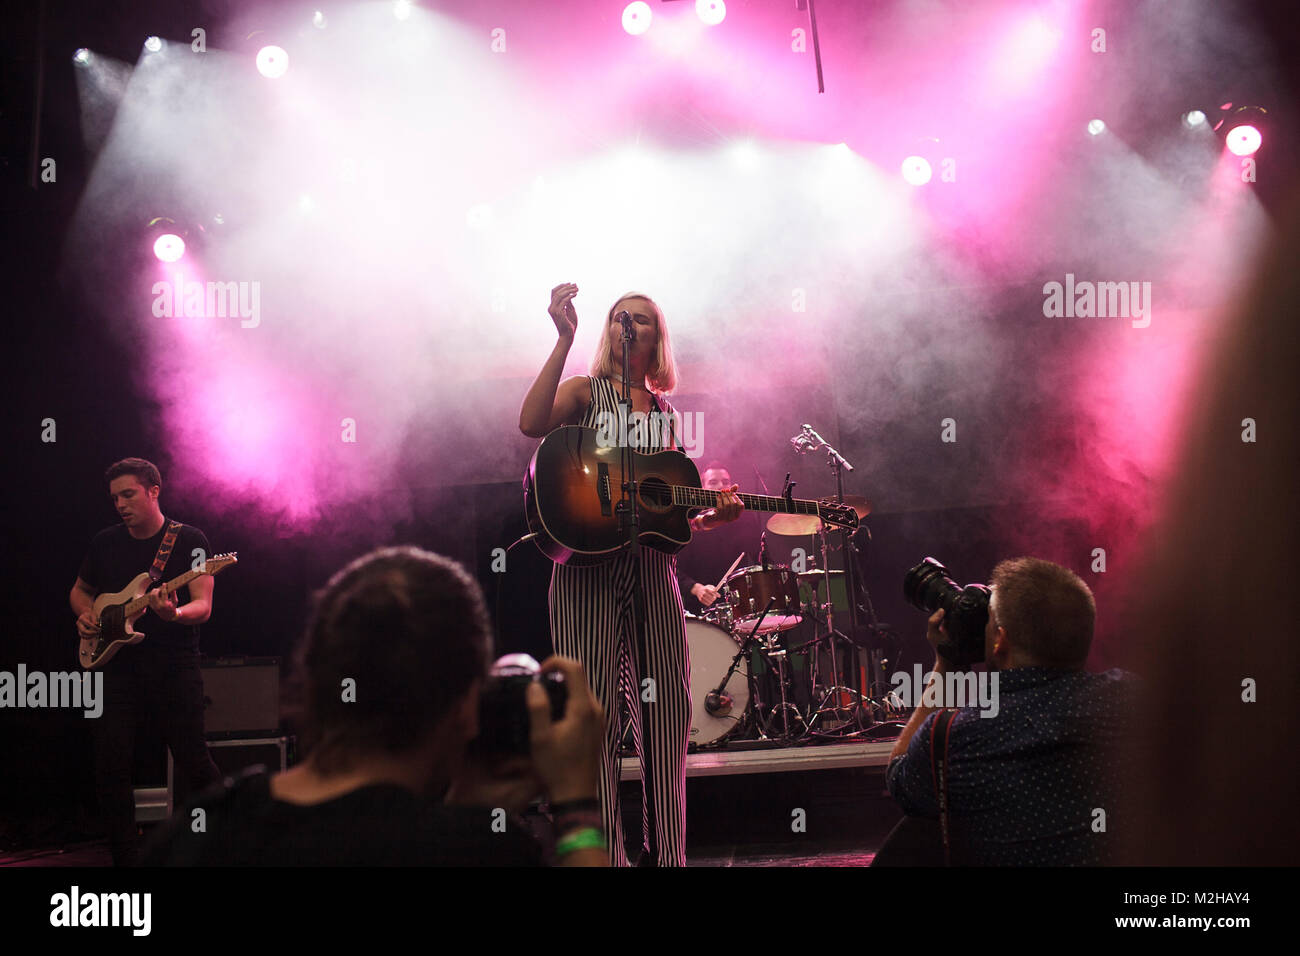 El folk pop noruego cantor y músico Dagny realiza un concierto en vivo en el festival de música danesa Trailerpark Festival 2016 en Copenhague. Dinamarca, 29/07 2016. Foto de stock